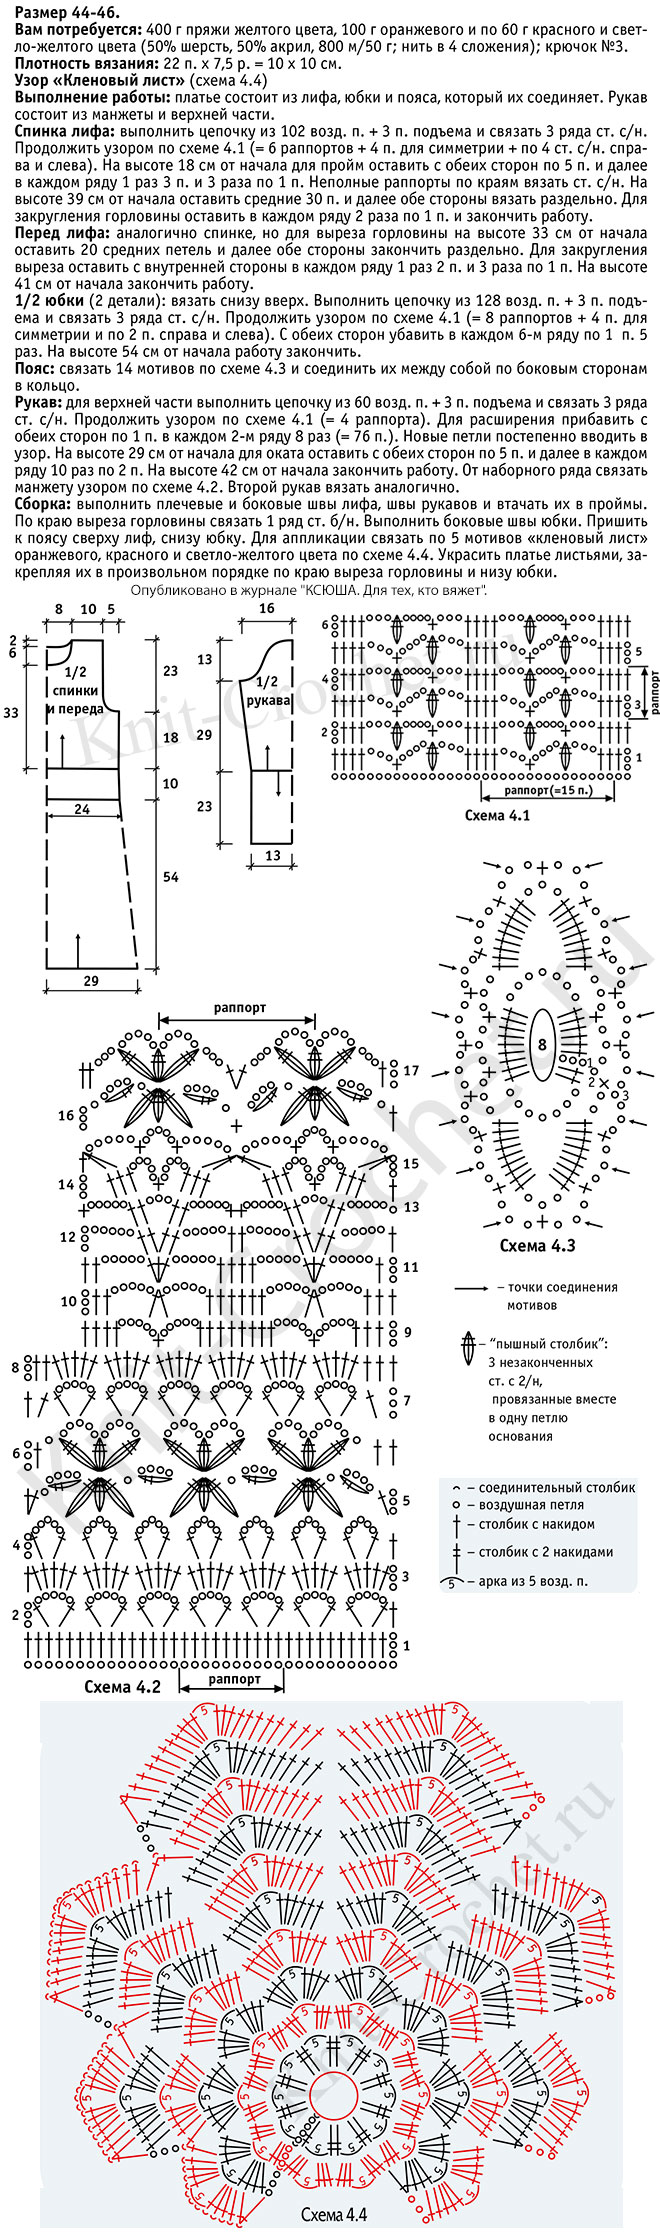 Выкройка, схемы узоров с описанием вязания крючком платья «Золотая осень» размера 44-46.